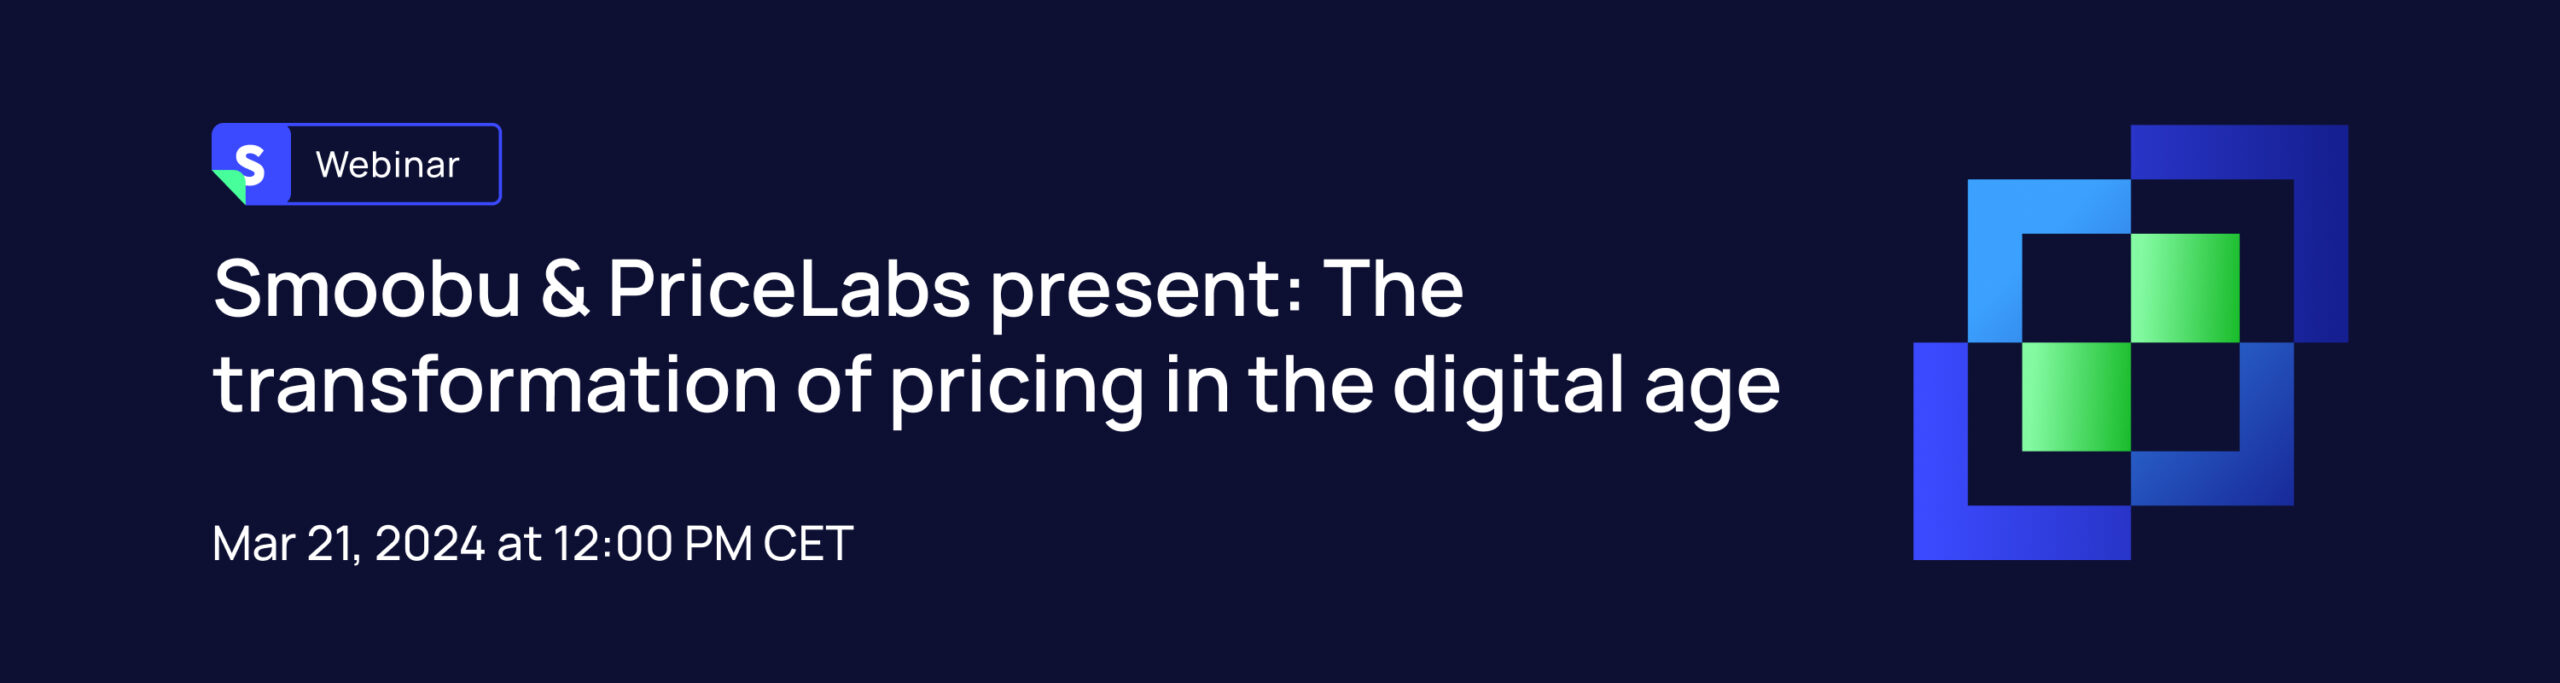 ᐅ Smoobu & PriceLabs präsentieren: Die Transformation der Preisgestaltung im digitalen Zeitalter | Smoobu